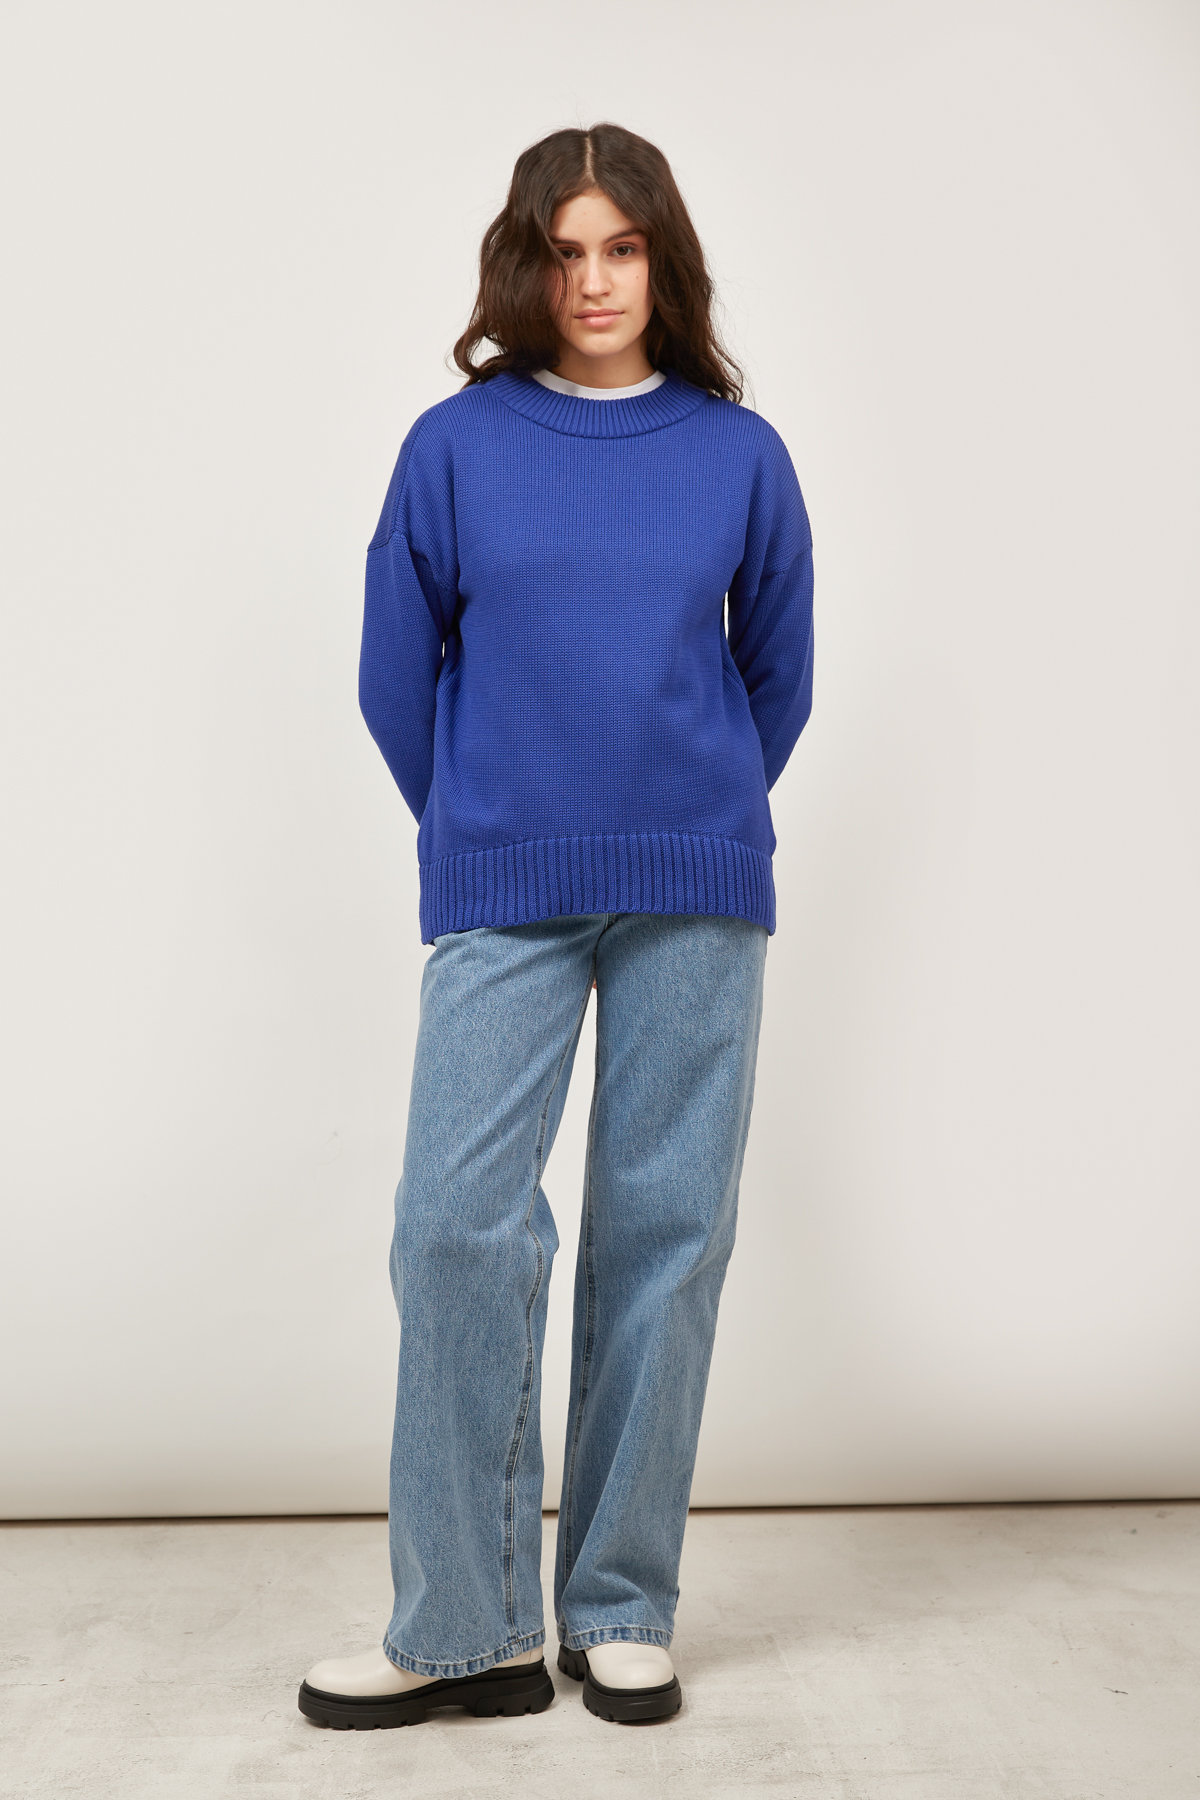 Хлопковый свитер цвета ультрамарин, фото 2